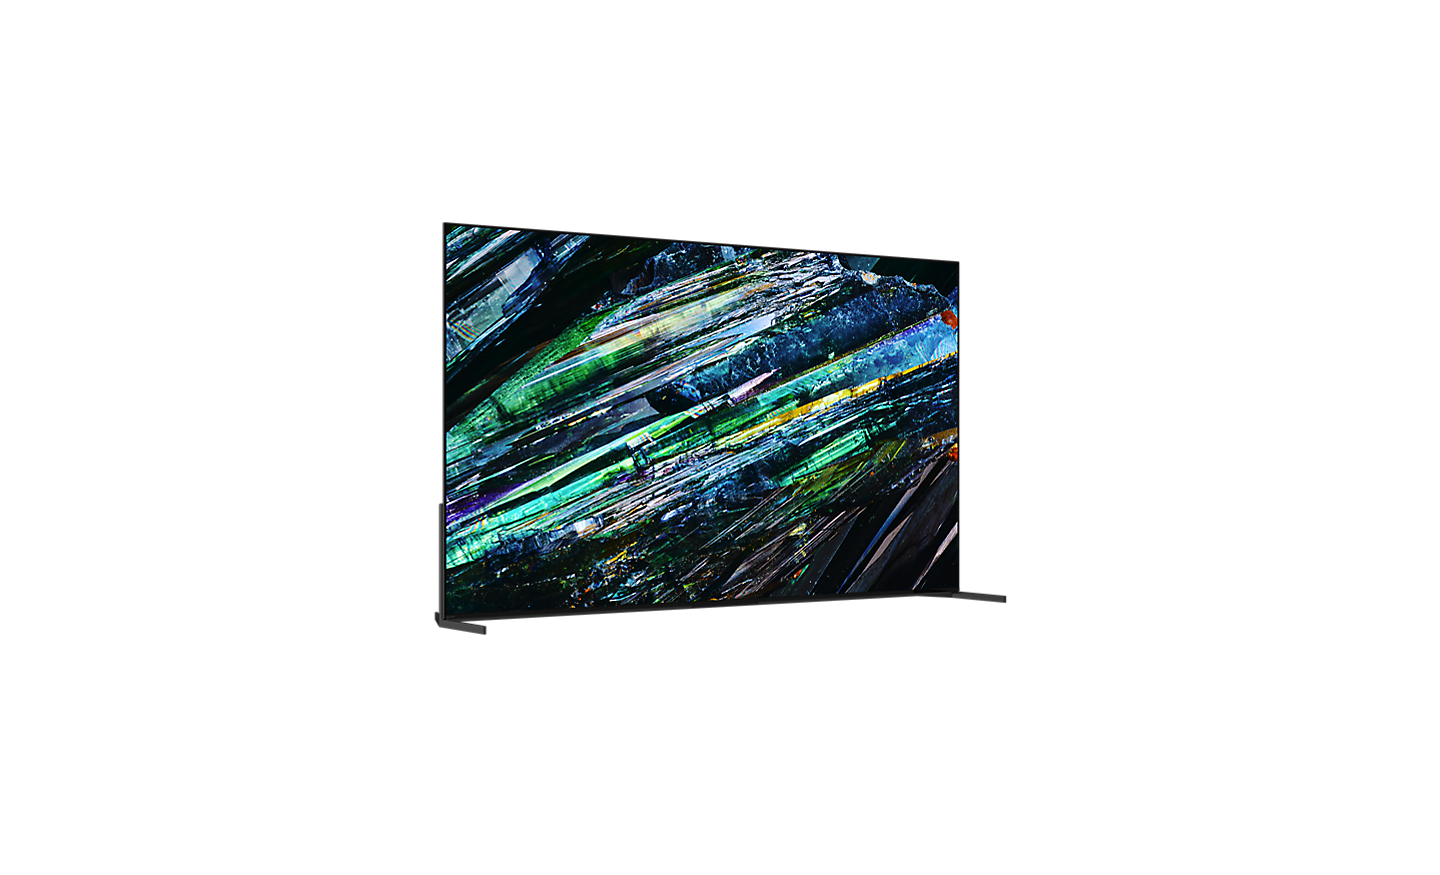 Verschuifbare 360-viewer waarmee je 360°-weergave kunt bekijken van een tv uit de A95L-serie